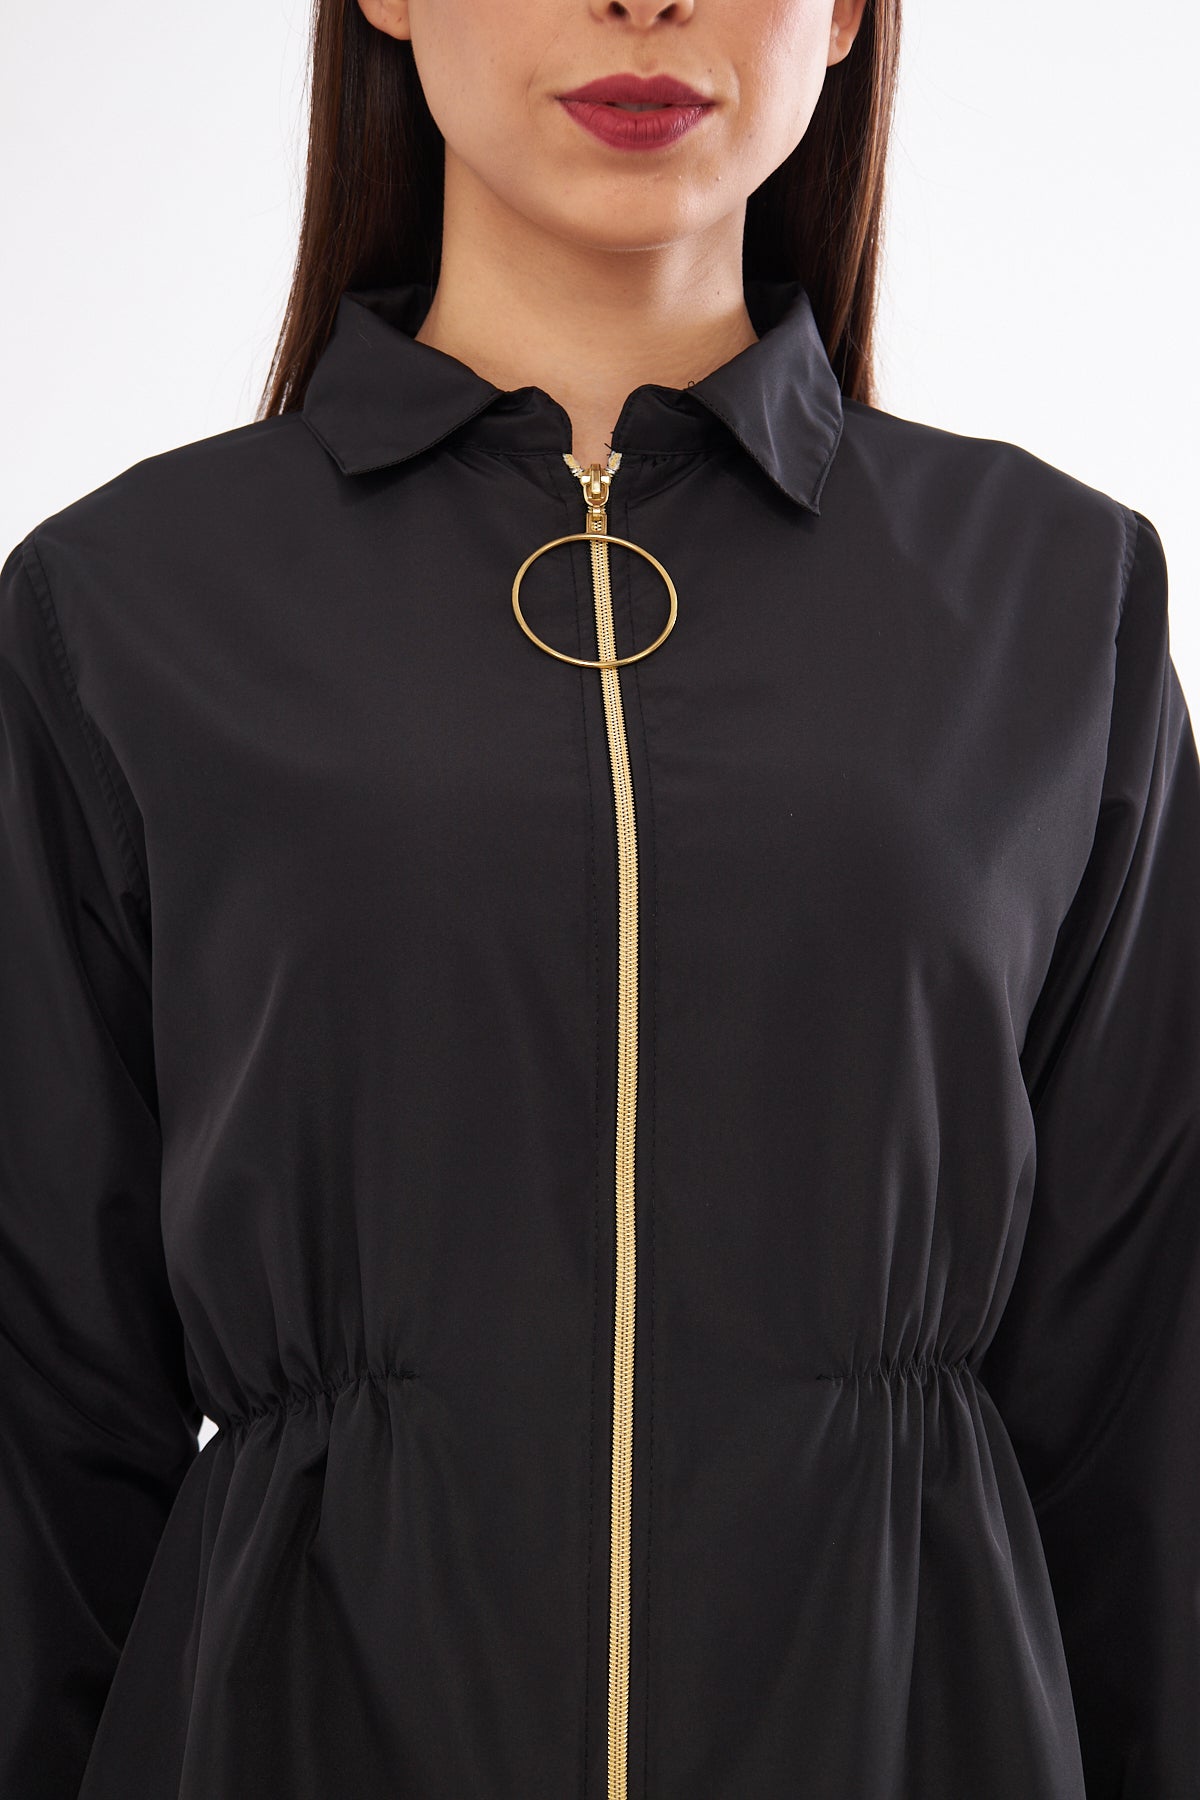 بدلة سباحة للحجاب باللون الأسود والذهبي مكونة من 4 قطع